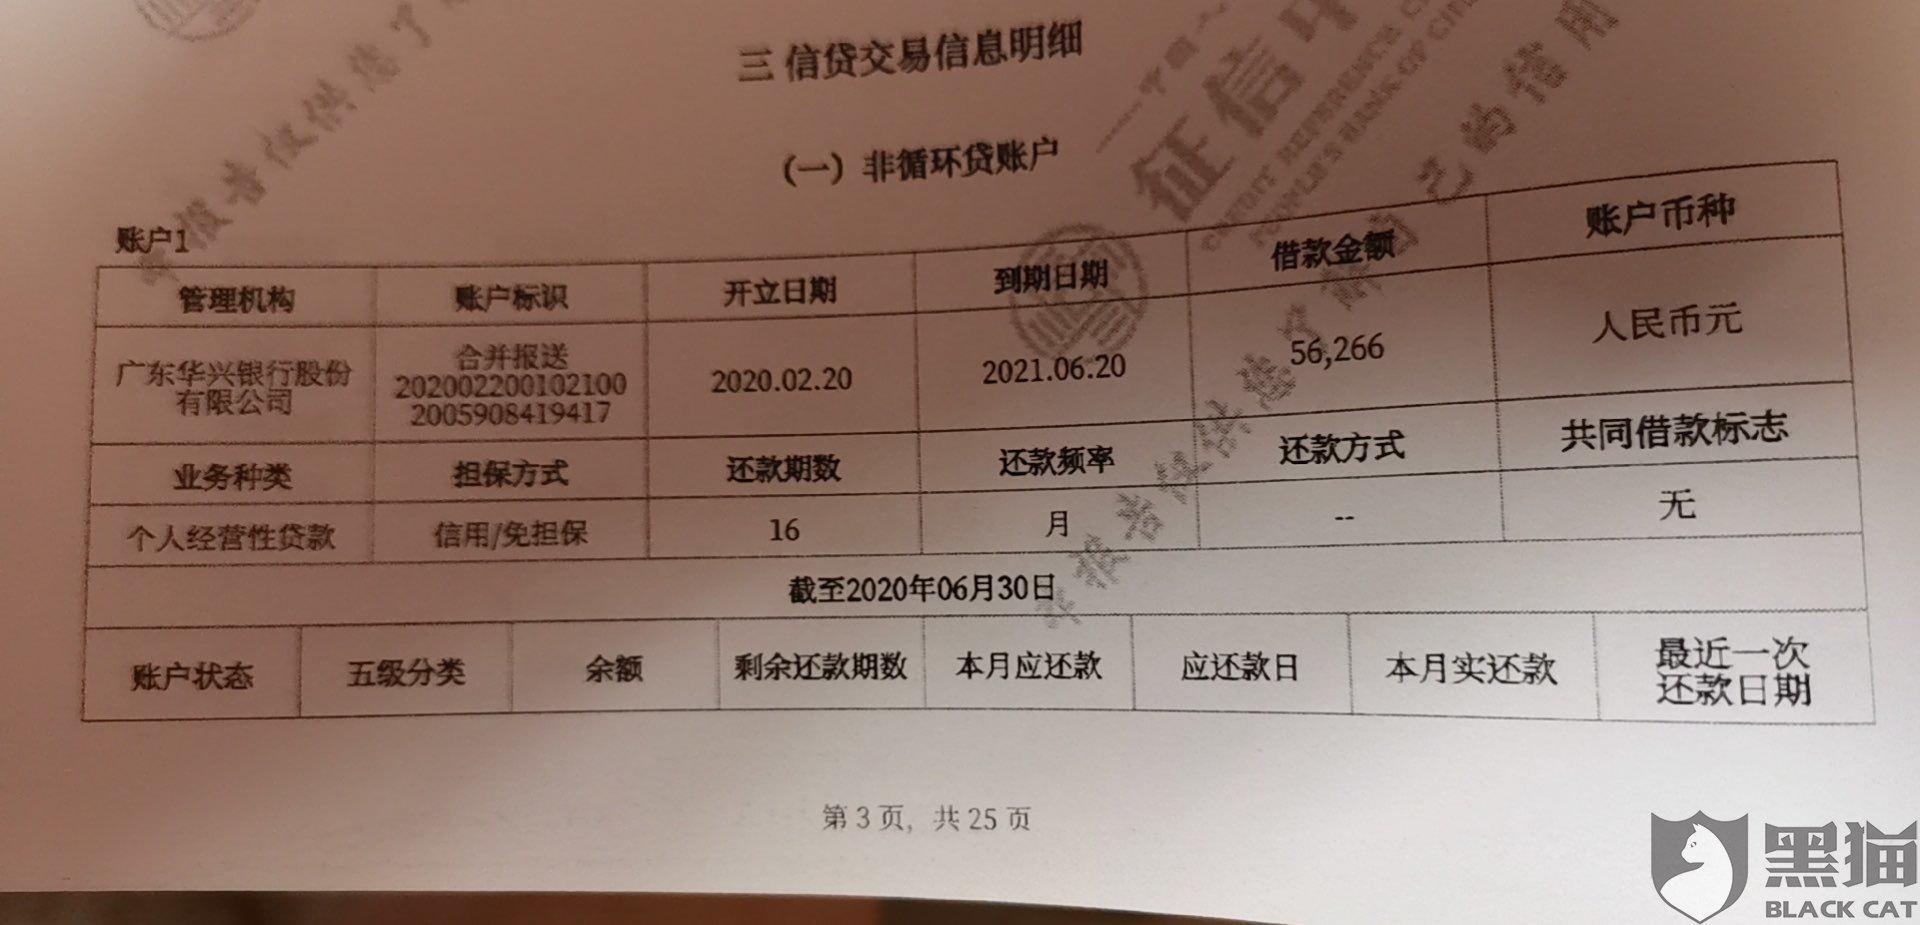 黑猫投诉广东华兴银行股份有限公司开结清证明